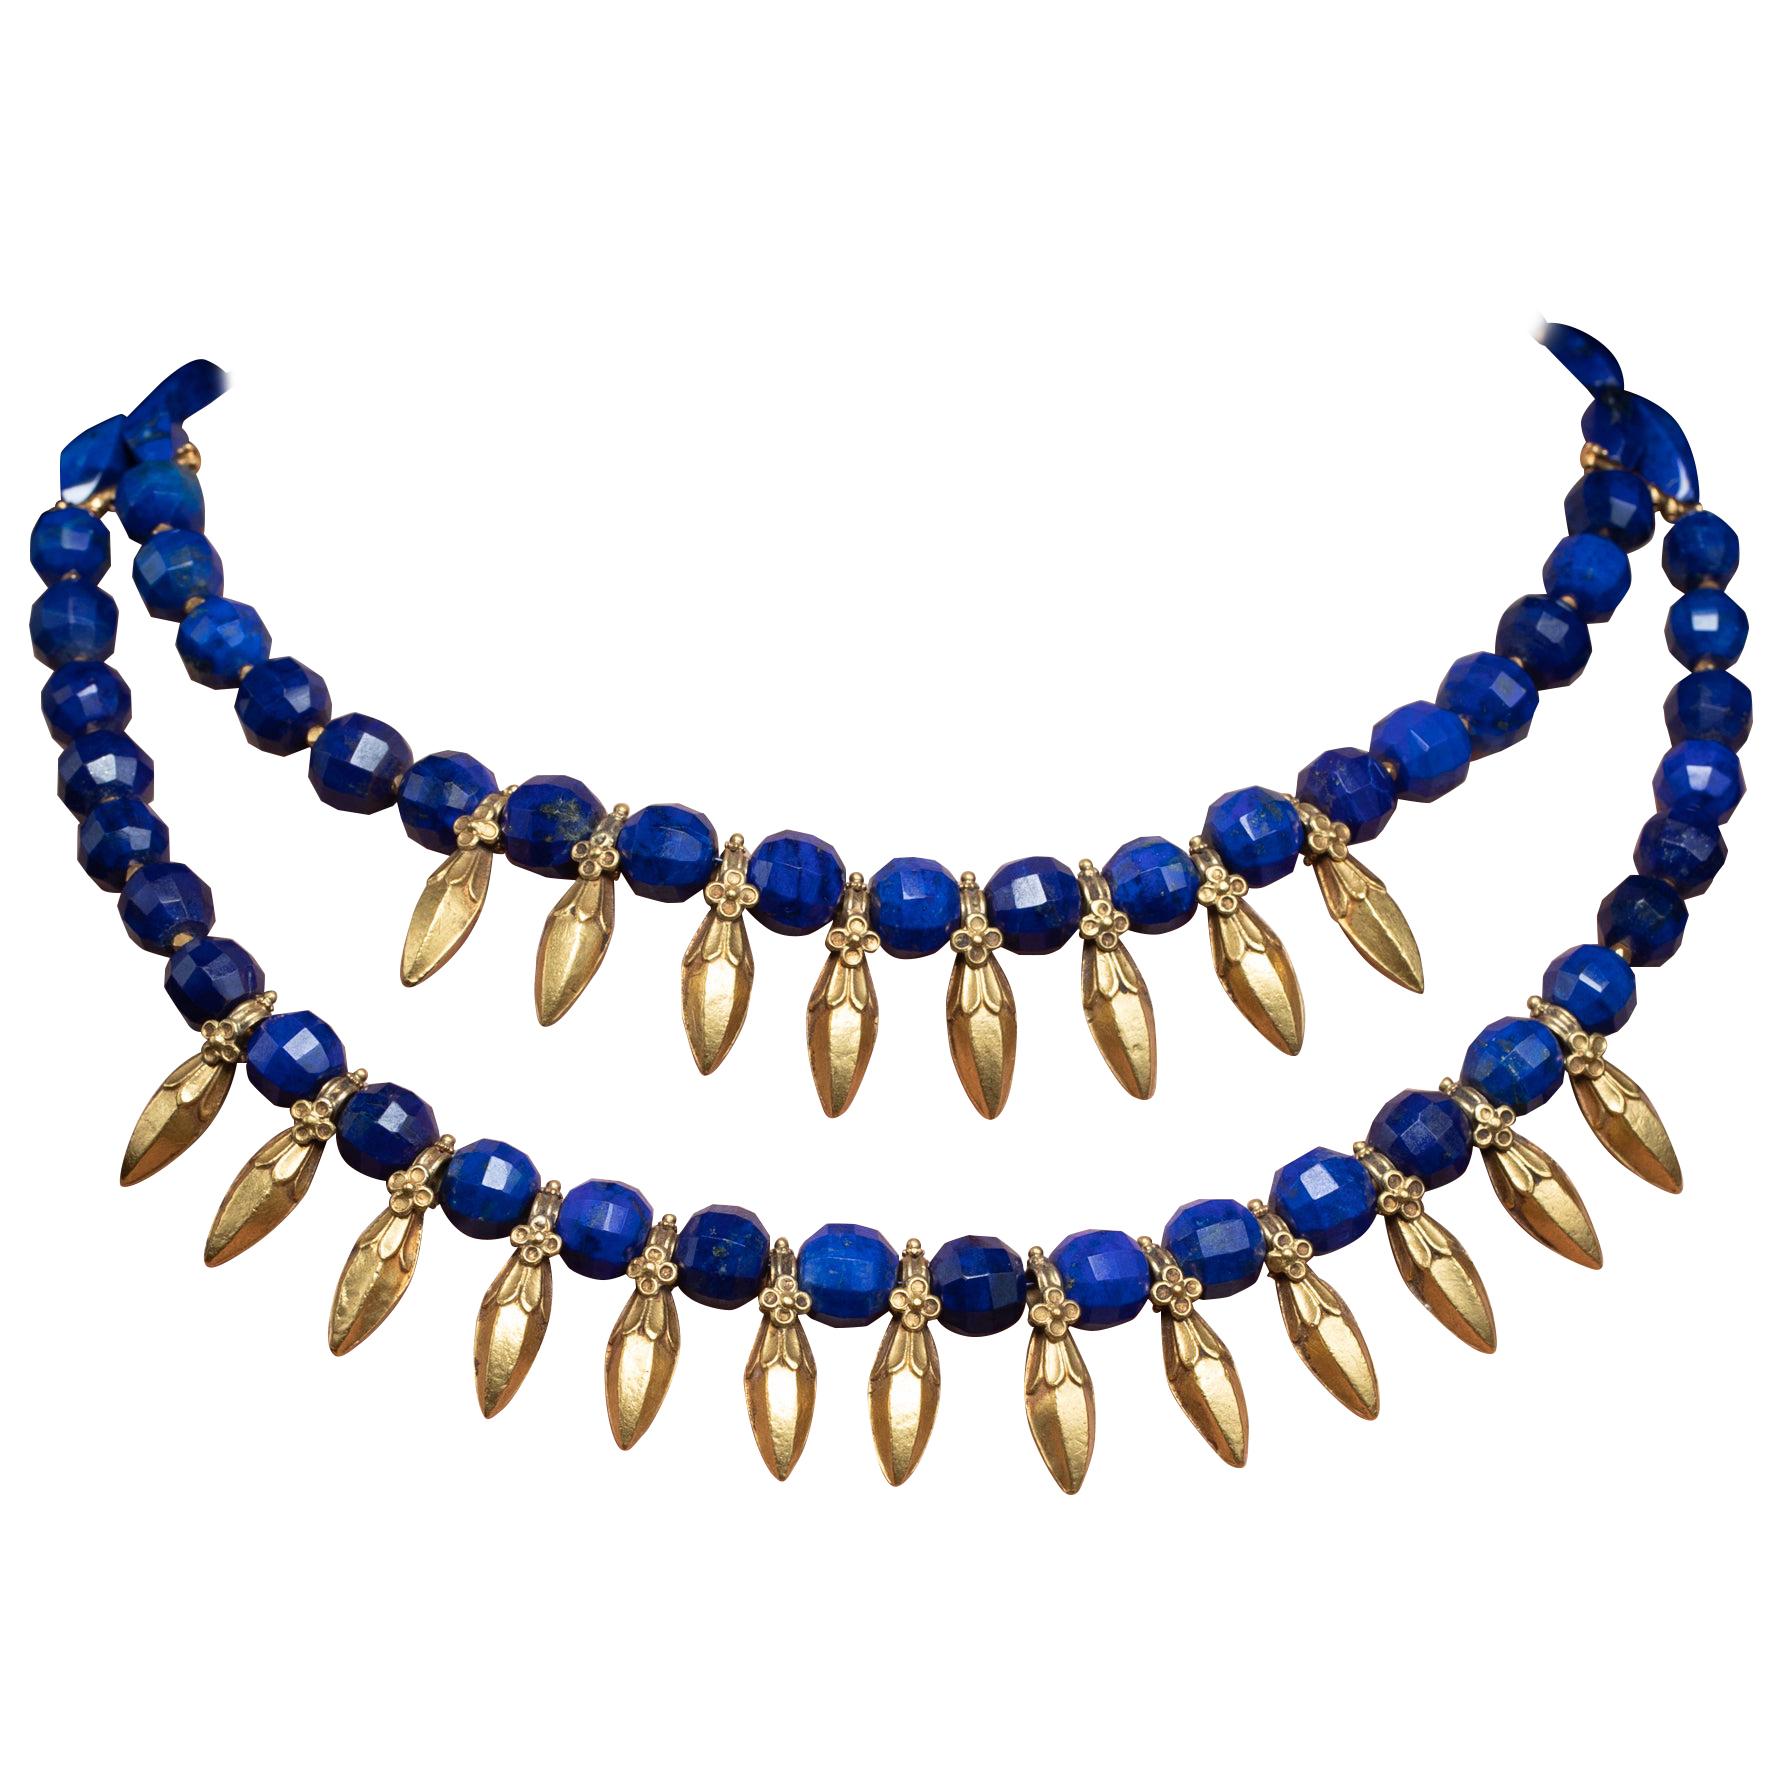 Collier de perles en Lapis bleu paon et or 22 carats par Deborah Lockhart Phillips